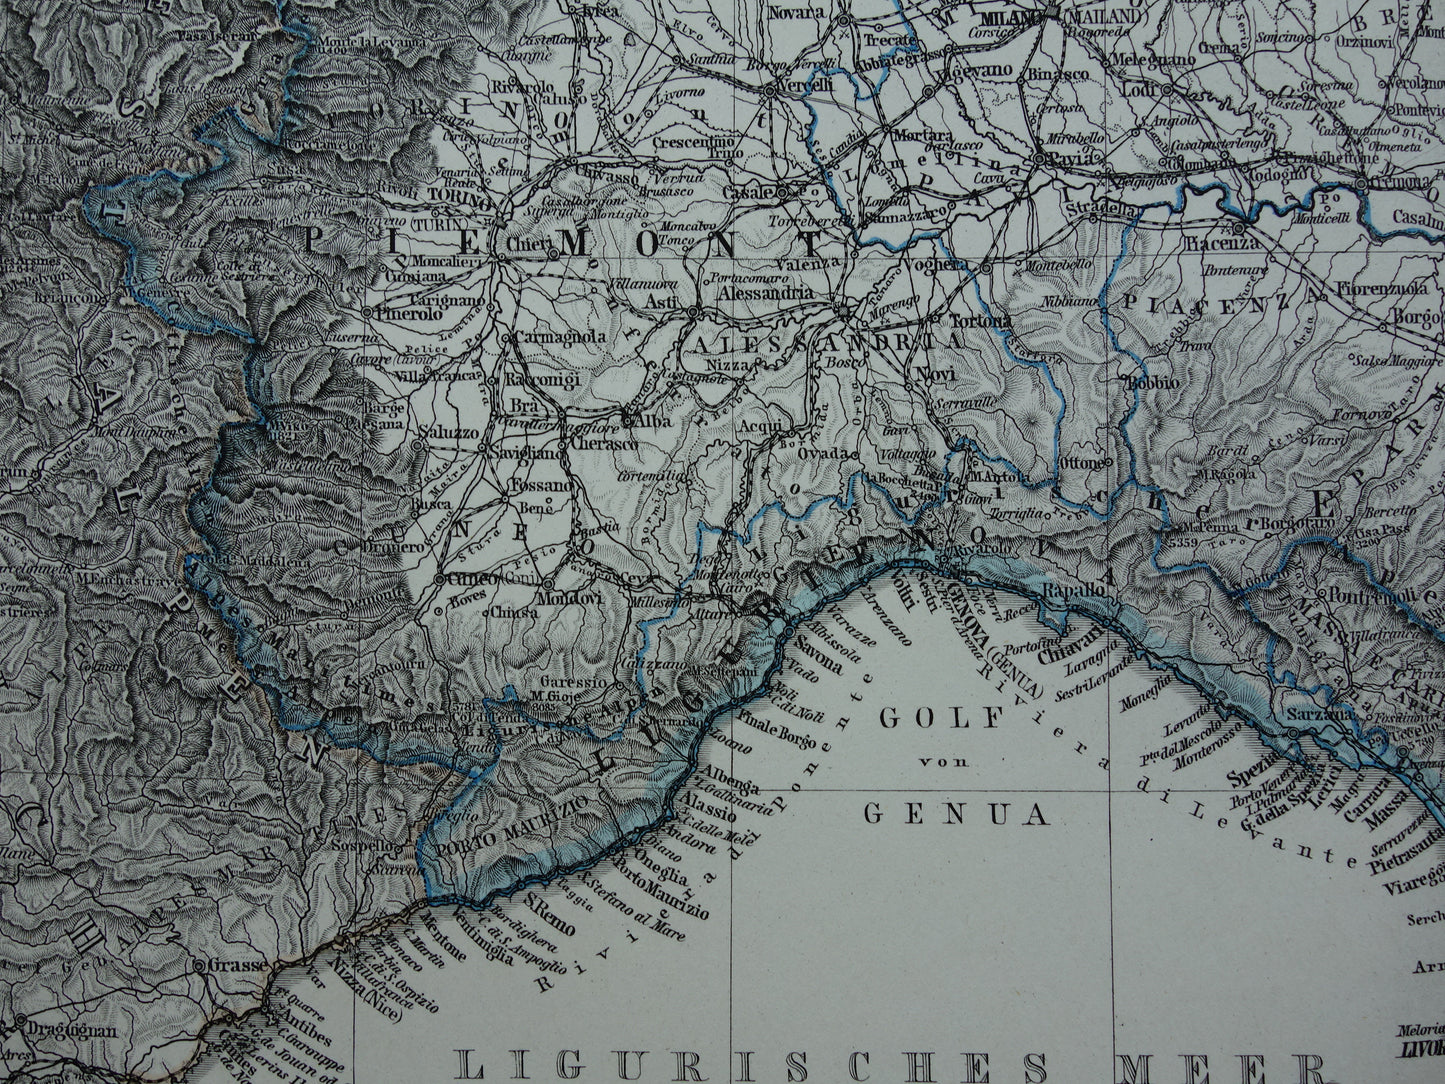 ITALIË oude kaart van Noord-Italië Grote originele antieke landkaart van Noord-Italië in 1879